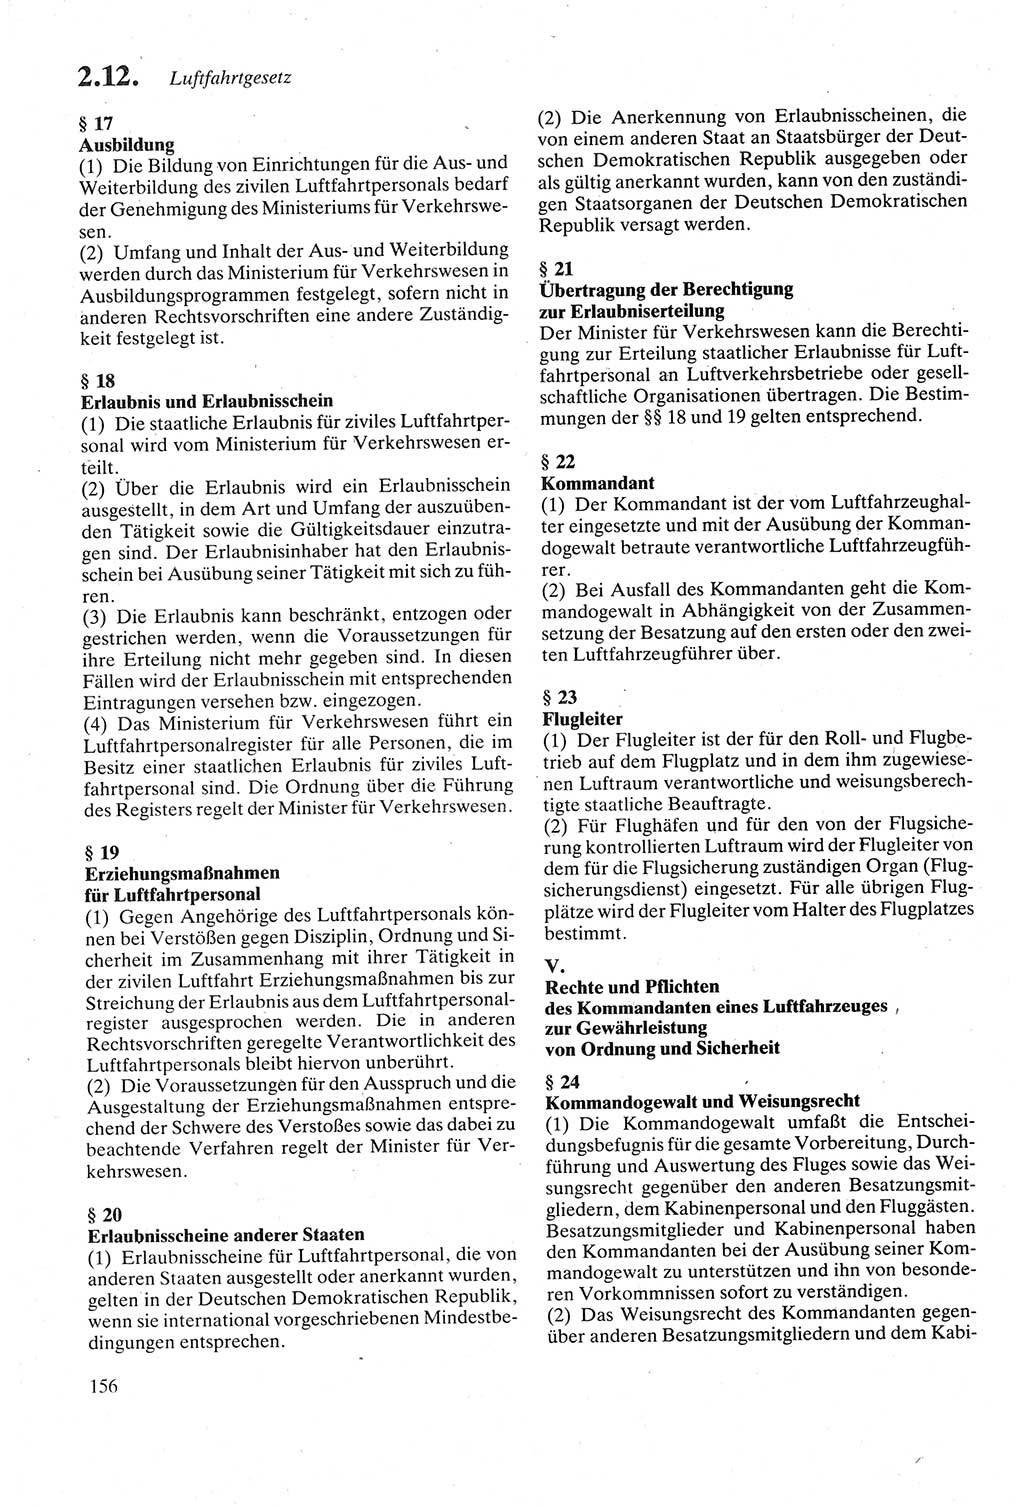 Strafgesetzbuch (StGB) der Deutschen Demokratischen Republik (DDR) sowie angrenzende Gesetze und Bestimmungen 1979, Seite 156 (StGB DDR Ges. Best. 1979, S. 156)